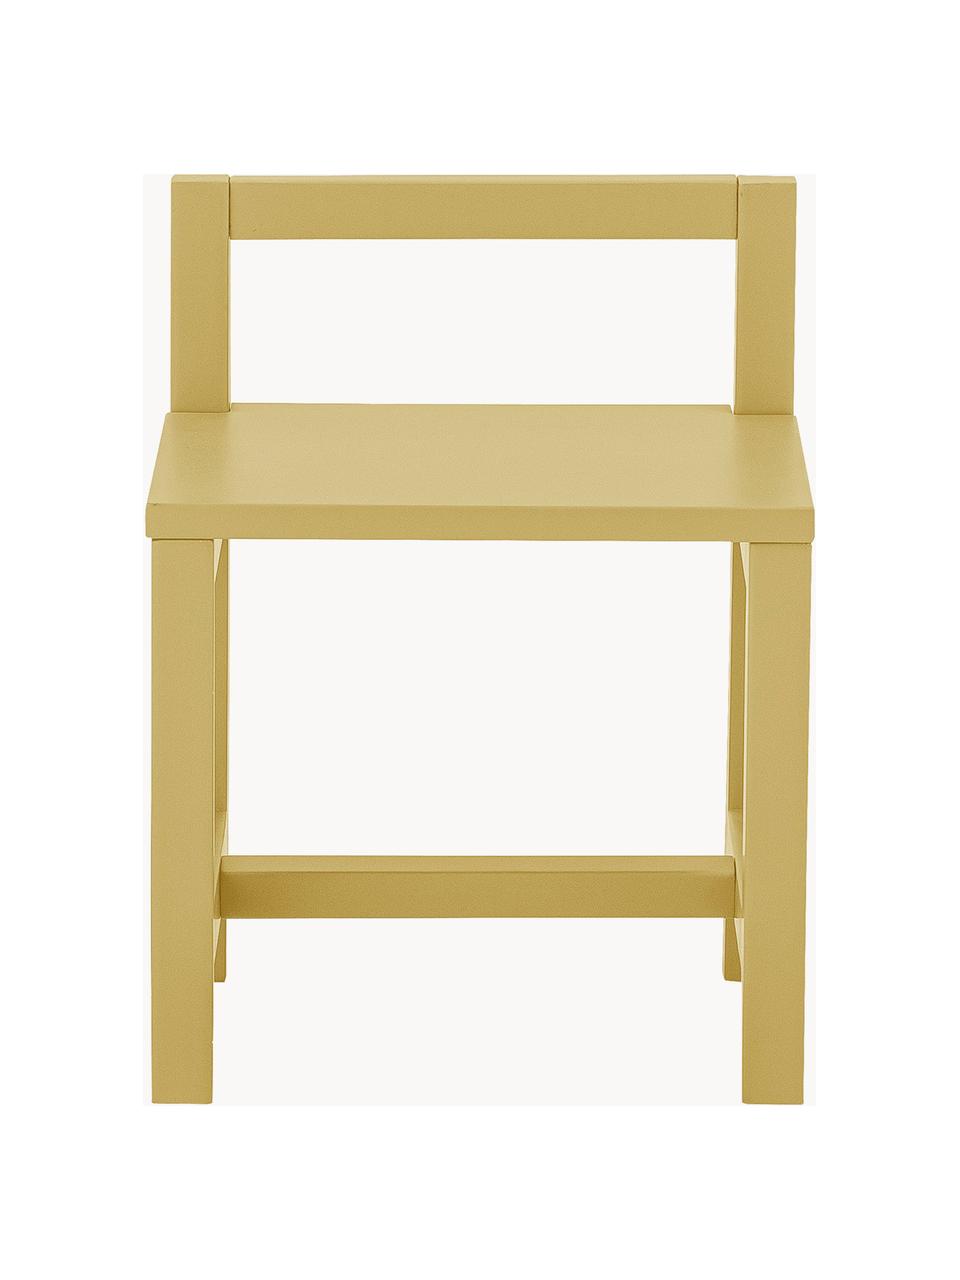 Dětská židle Rese, Dřevovláknitá deska střední hustoty (MDF), kaučukové dřevo, Kaučukové dřevo, lakované okrovou barvou, Š 32 cm, H 28 cm